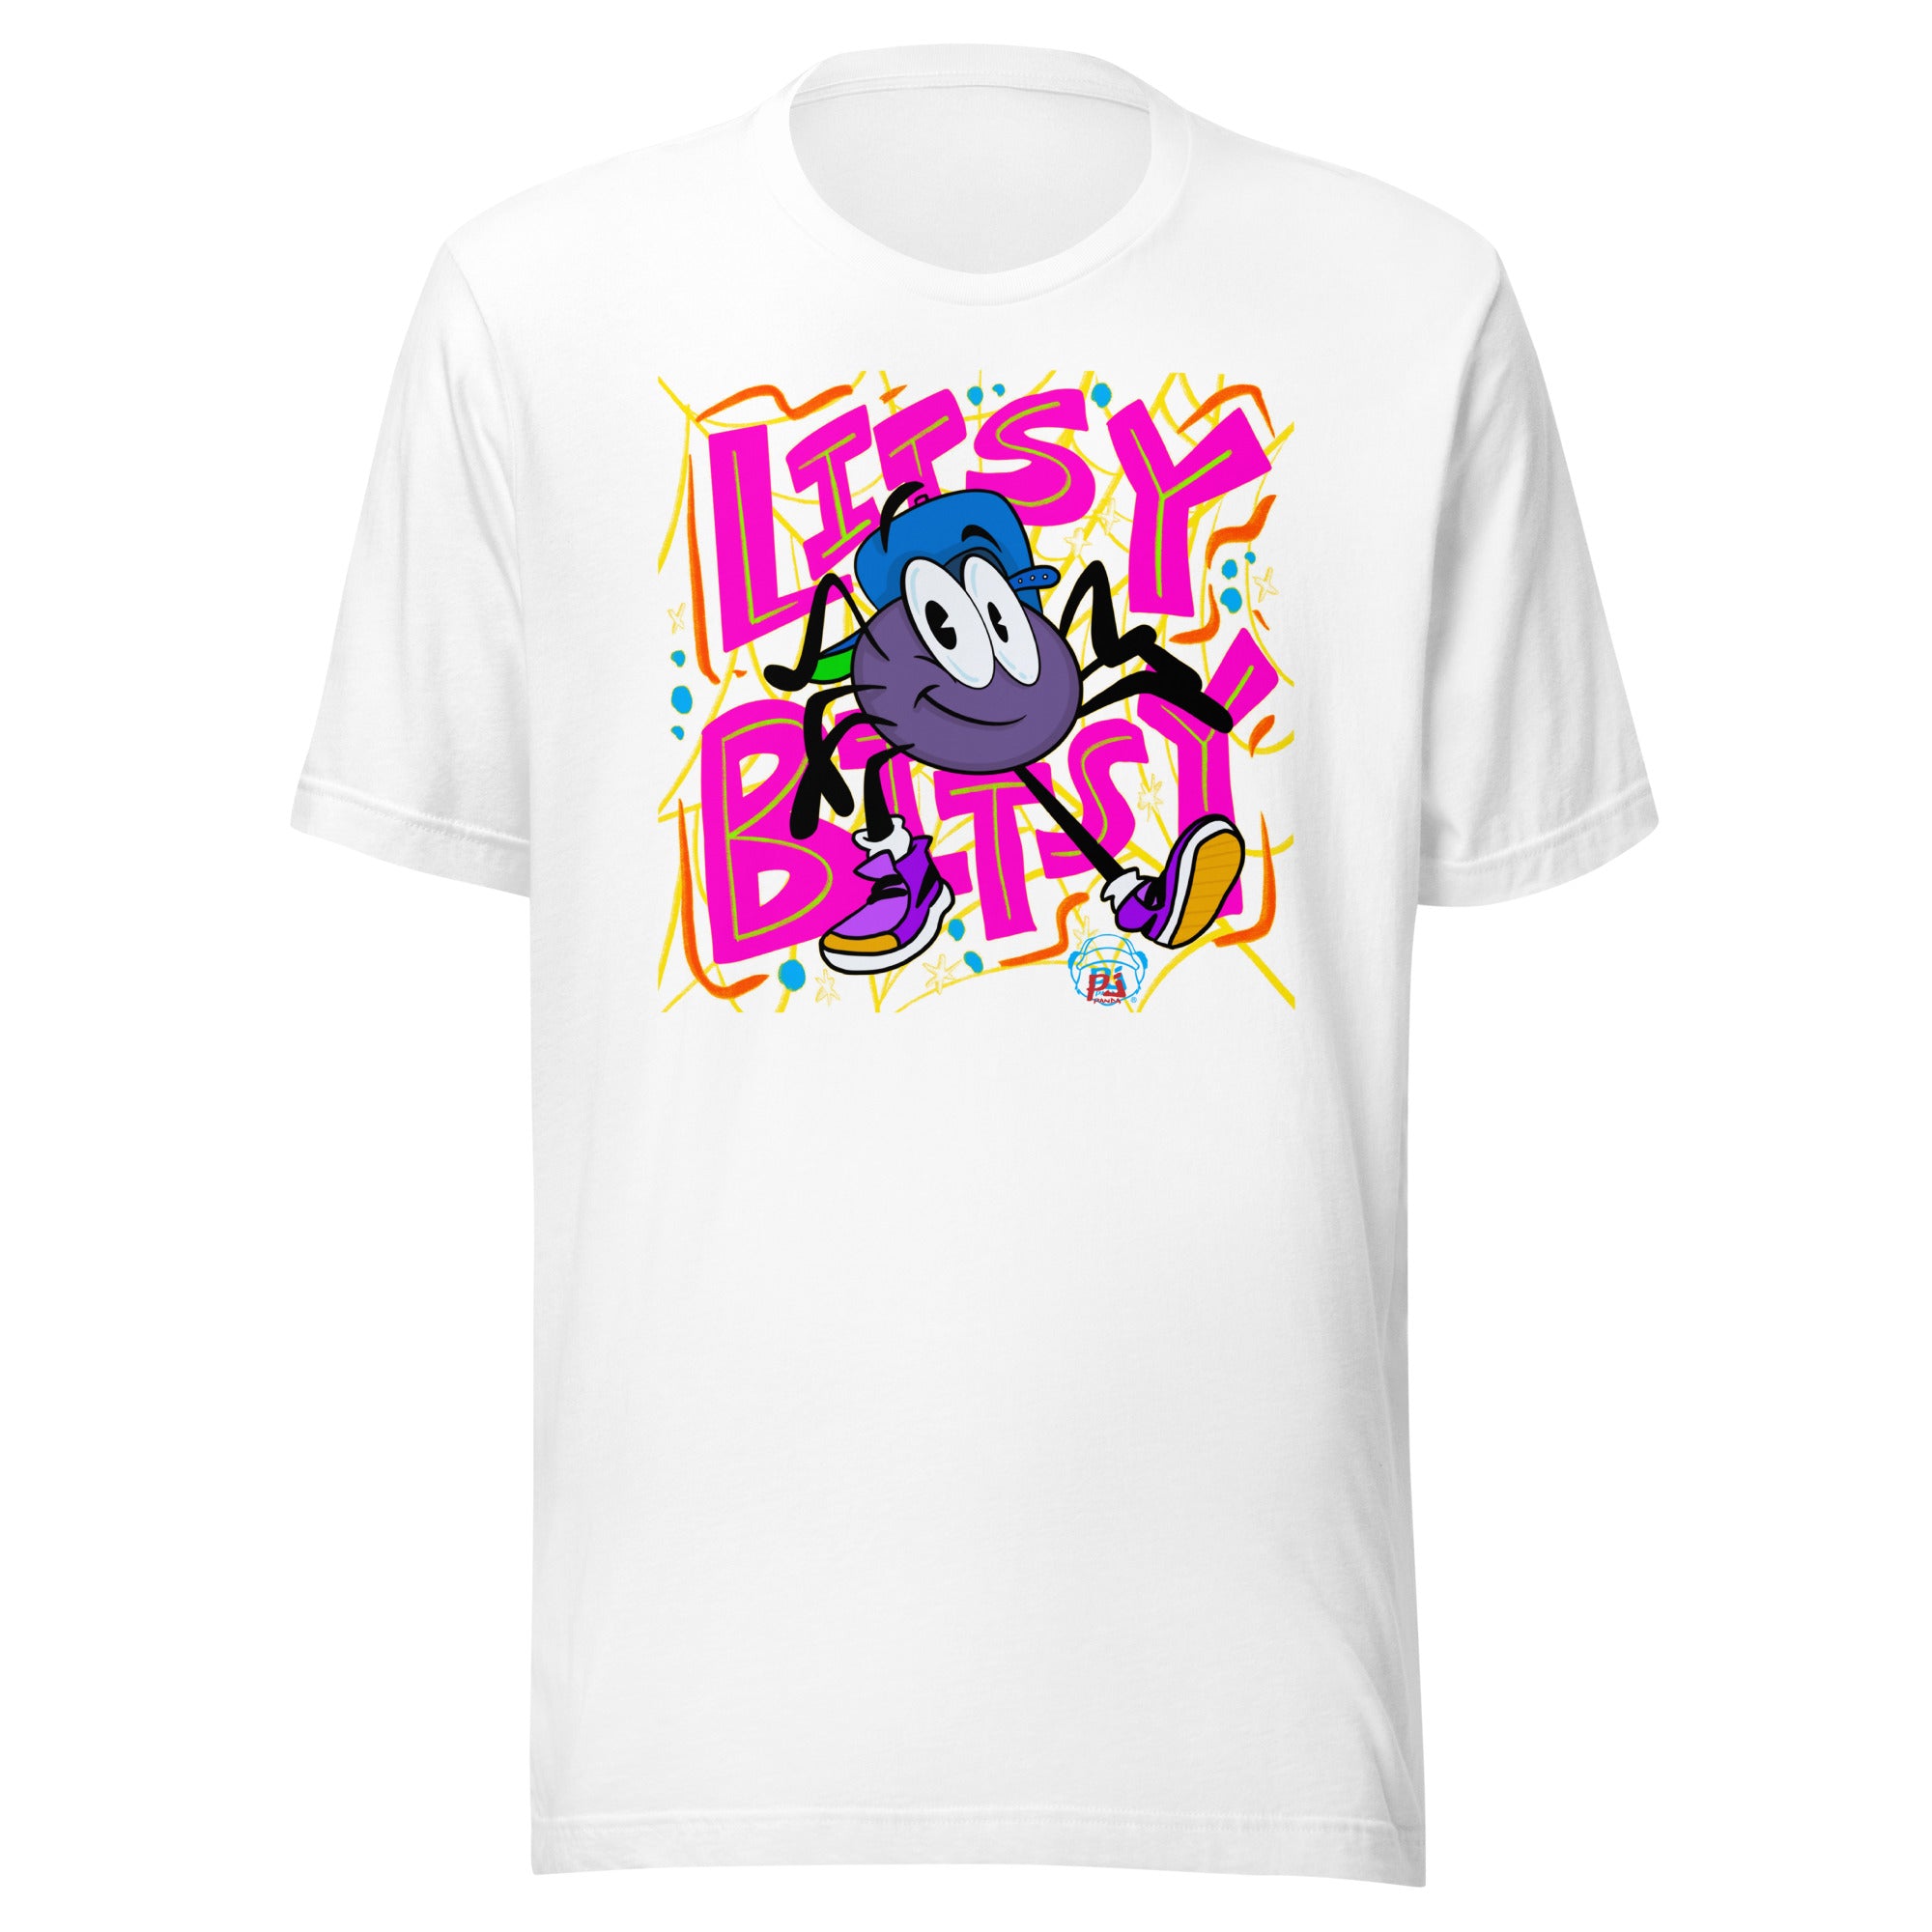 Litsy Bitsy Spider Trap Remix Unisex t-shirt